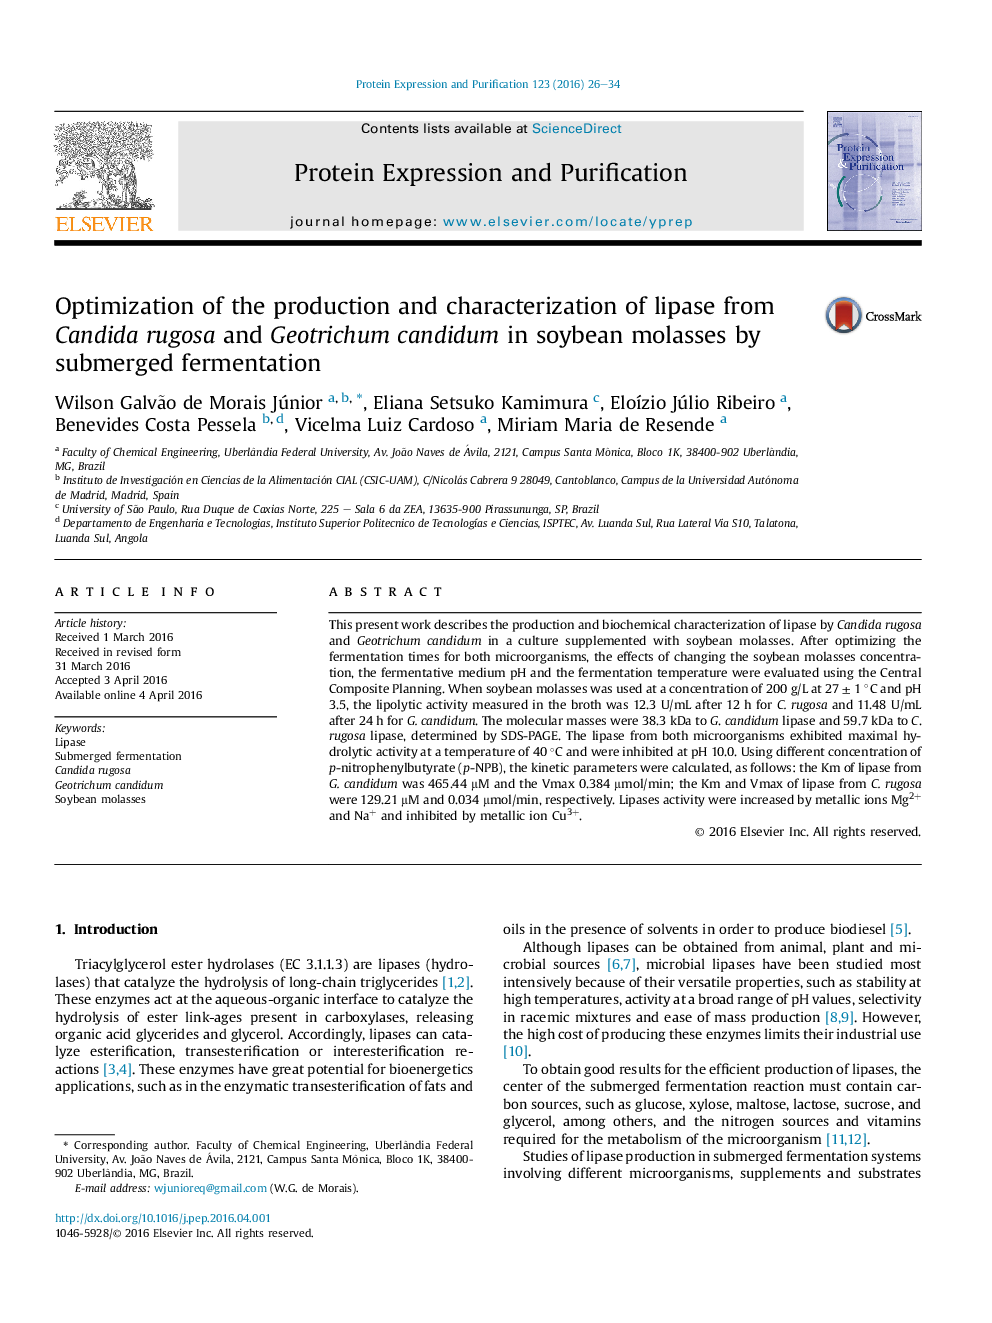 بهینه سازی تولید و خصوصی سازی لیپاز از کاندیدا روگوسا و ژوتریکوم کاندوموم در ملاس سویا با تخمیر غرق شده 